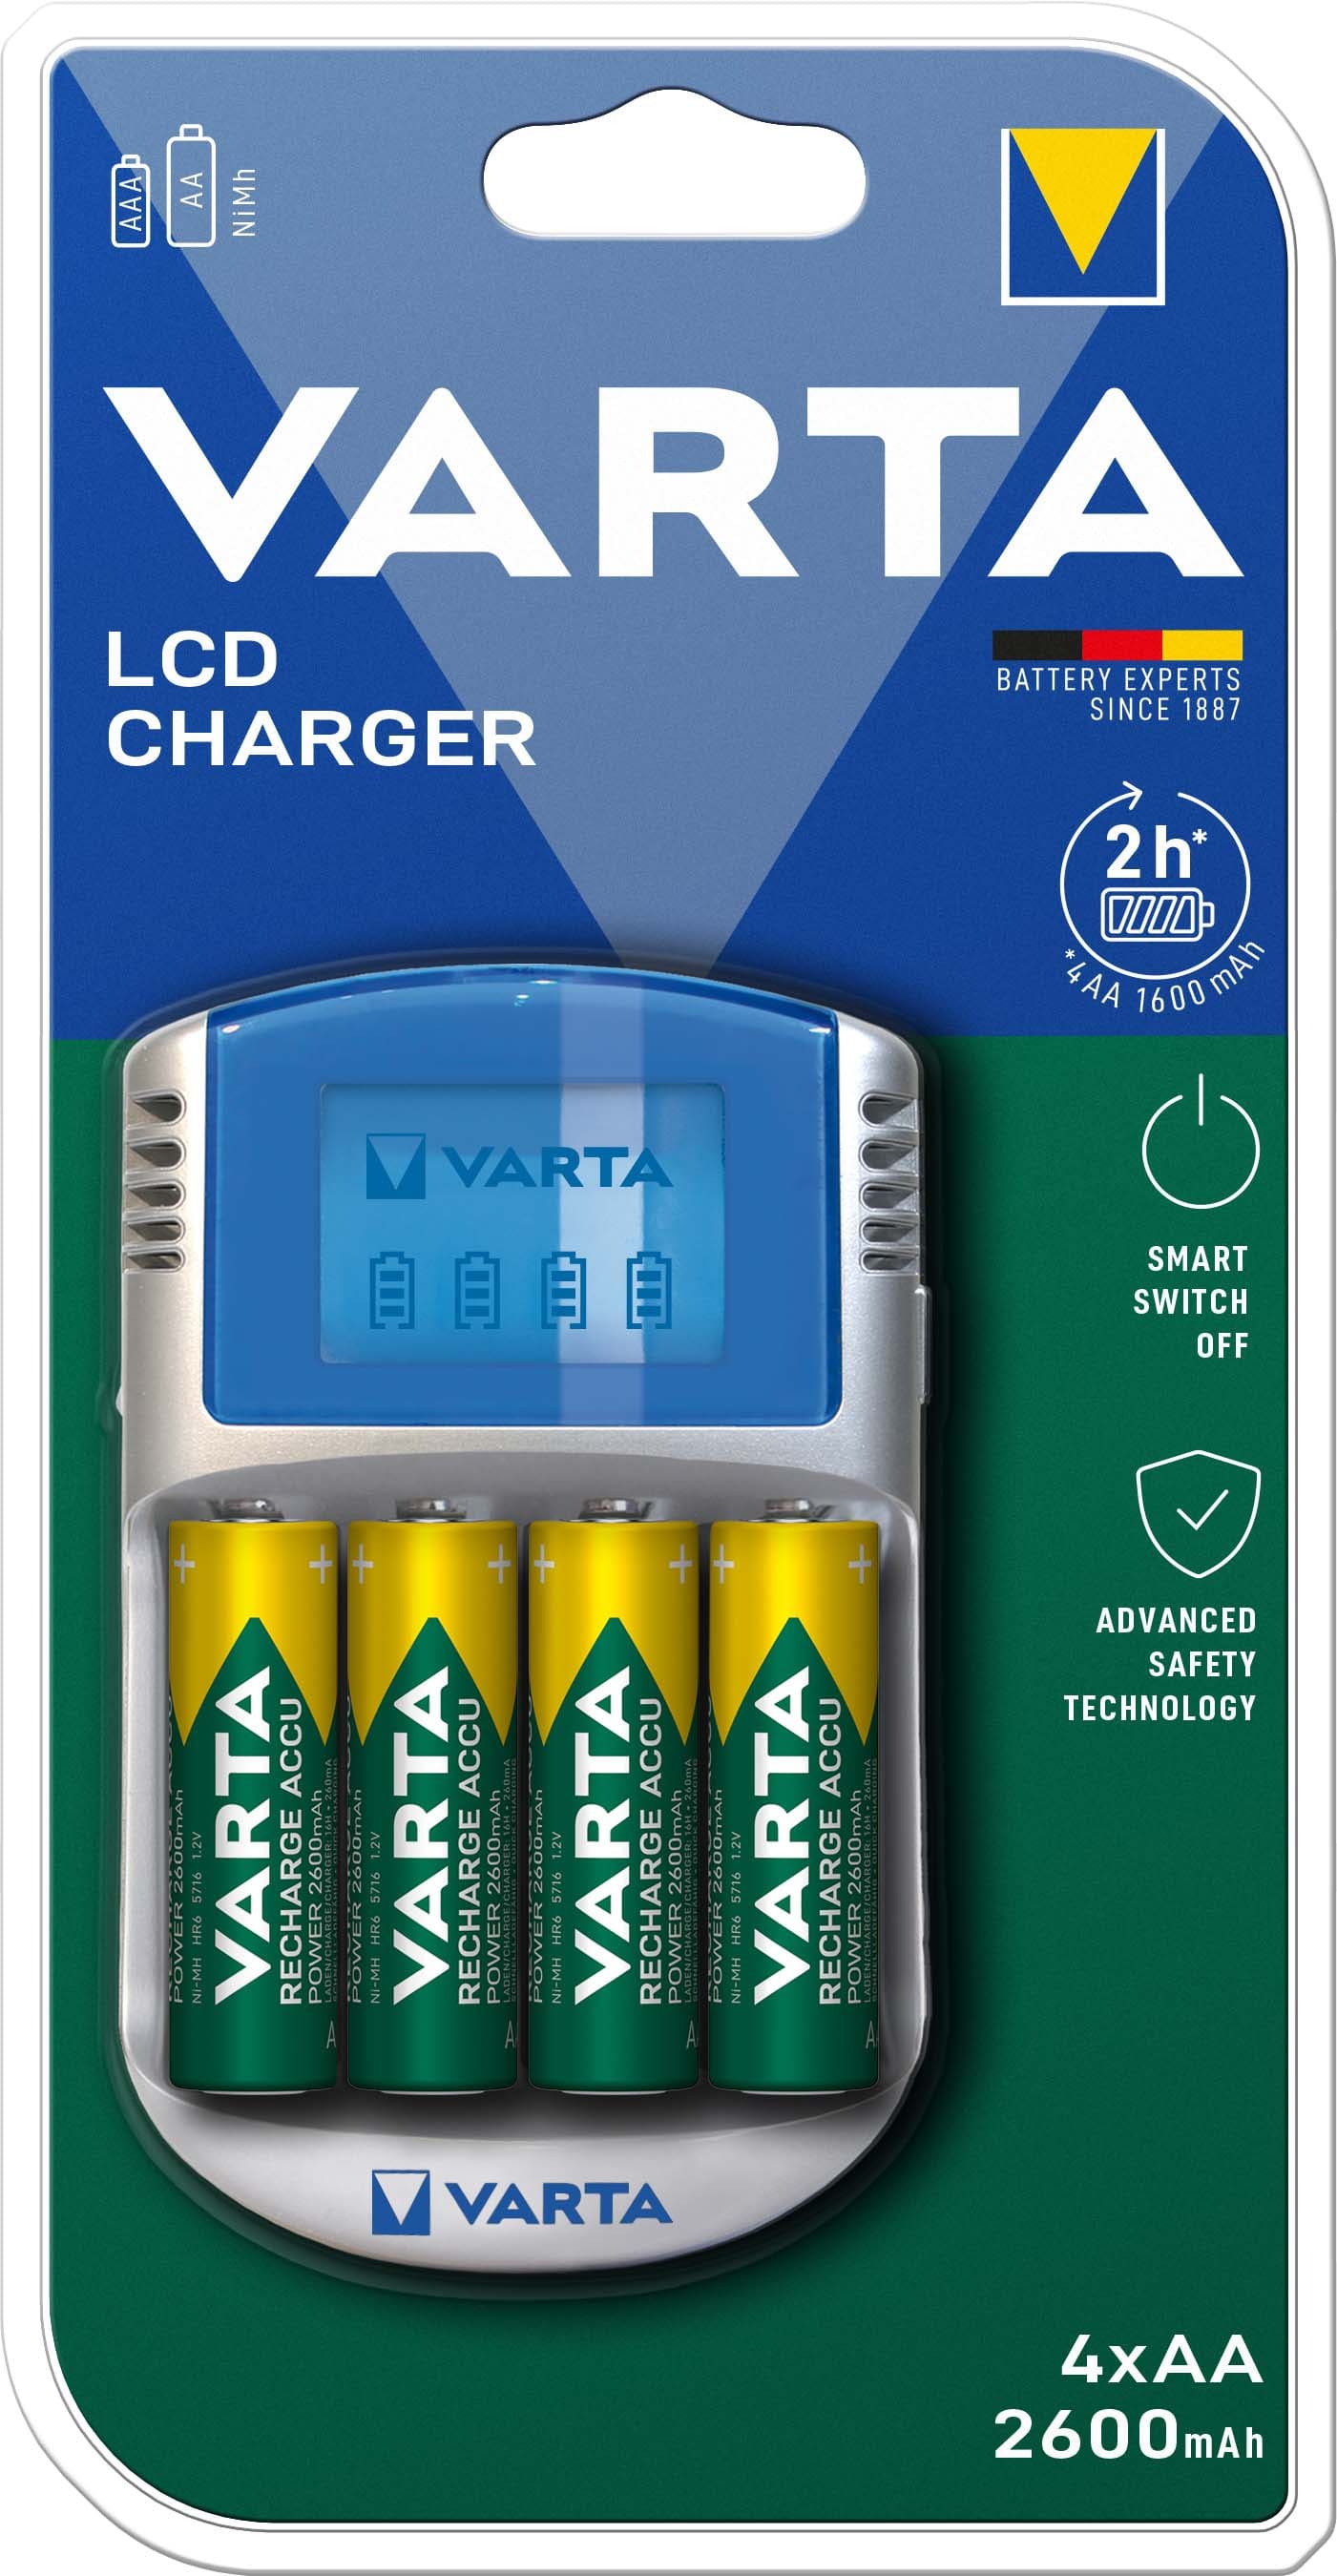 Varta 57070201451 LCD Charger inkl. 4x AA 2600mAh + 12V Adapter + USB Kabel